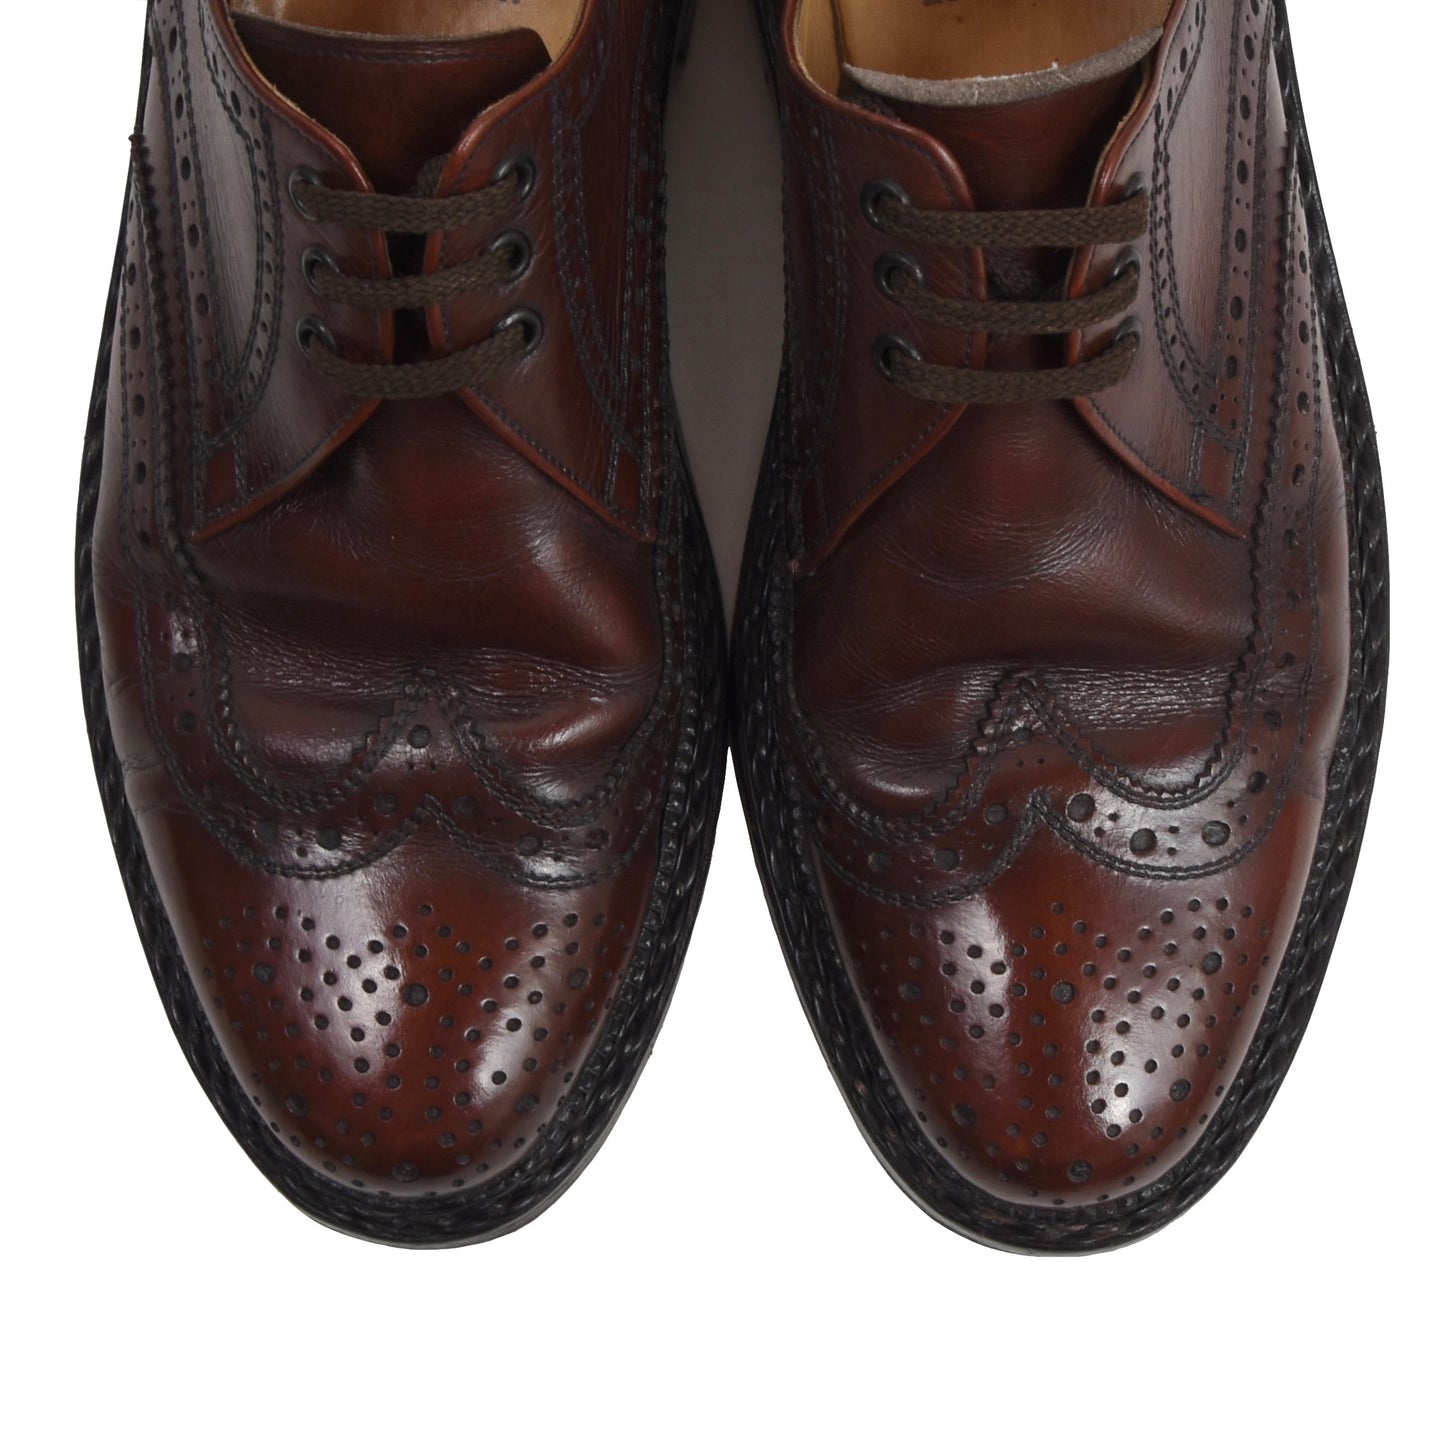 Apollo x Heinrich Dinkelacker Shoes Size 8 - Burgundy-Brown